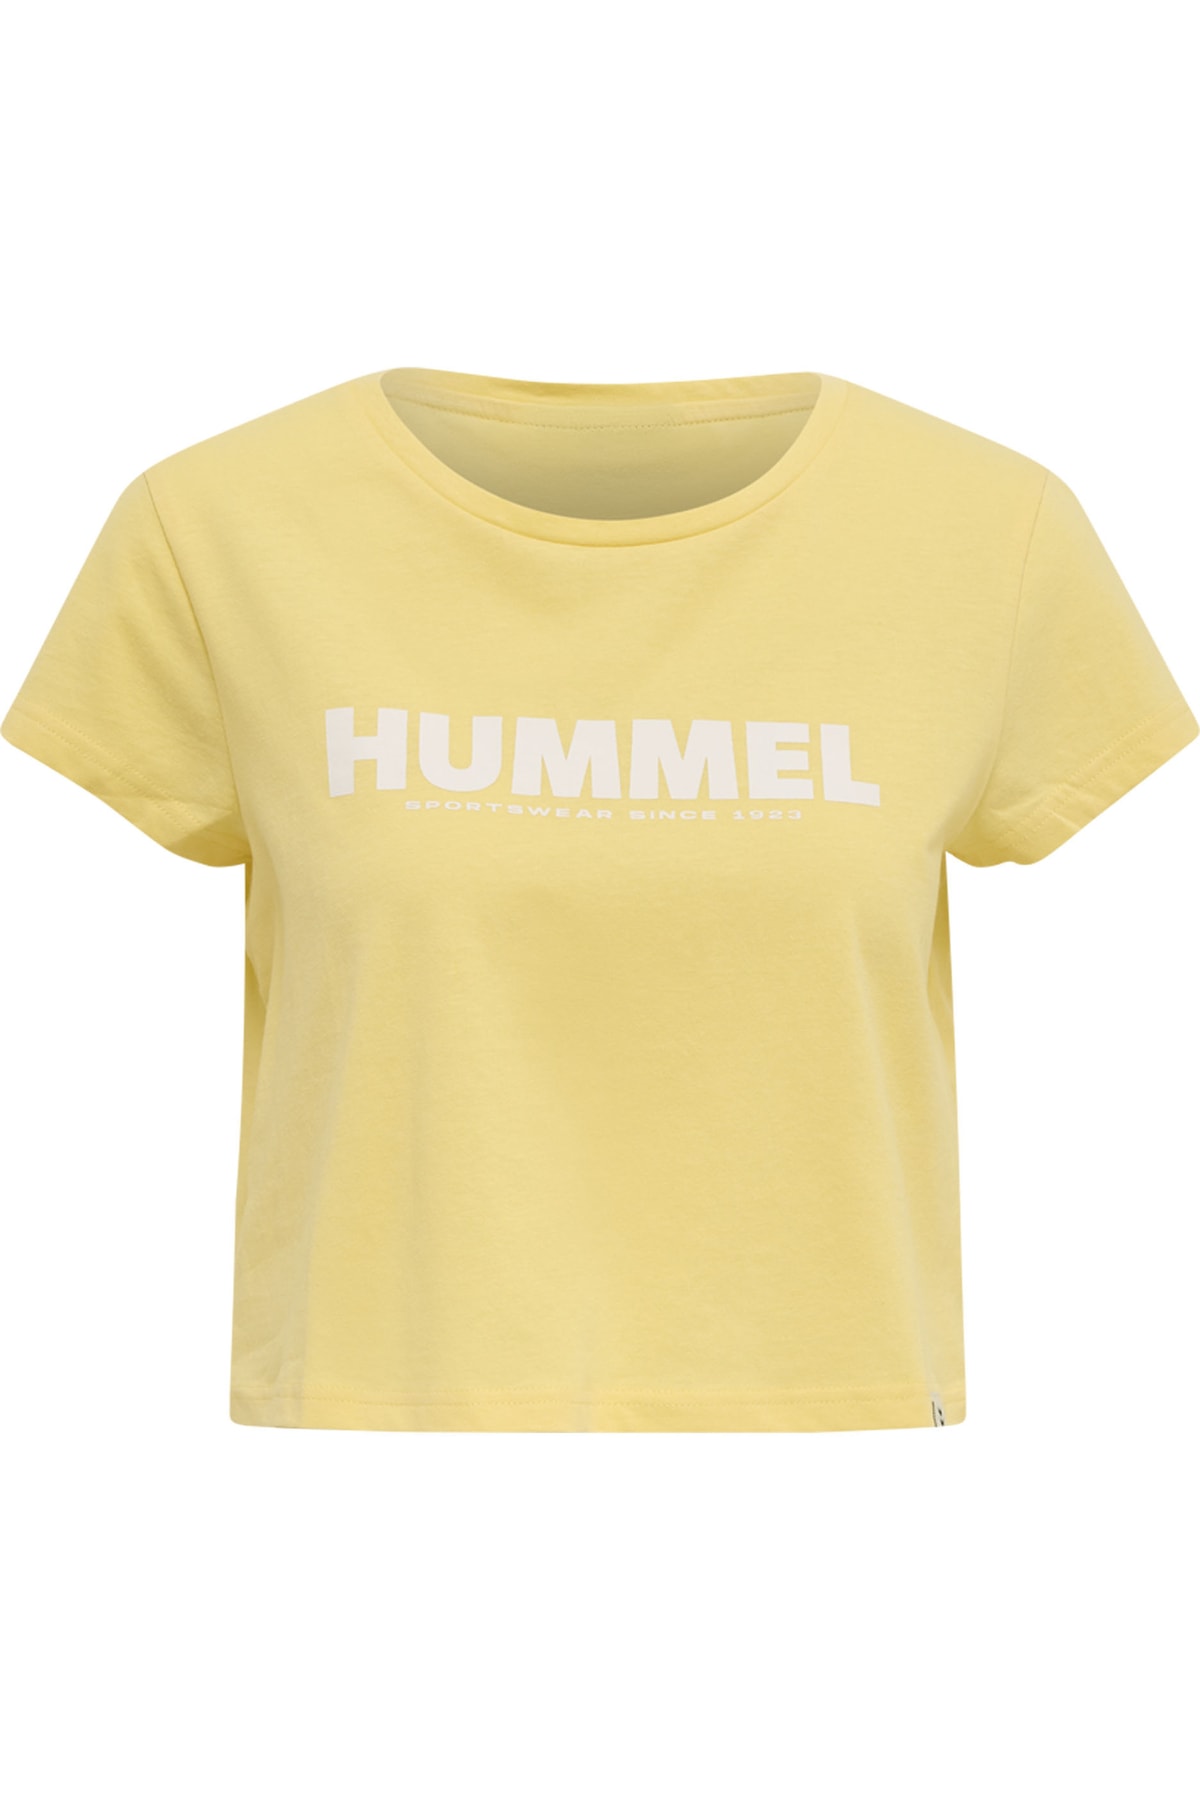 HUMMEL T-Shirt Gelb Relaxed Fit